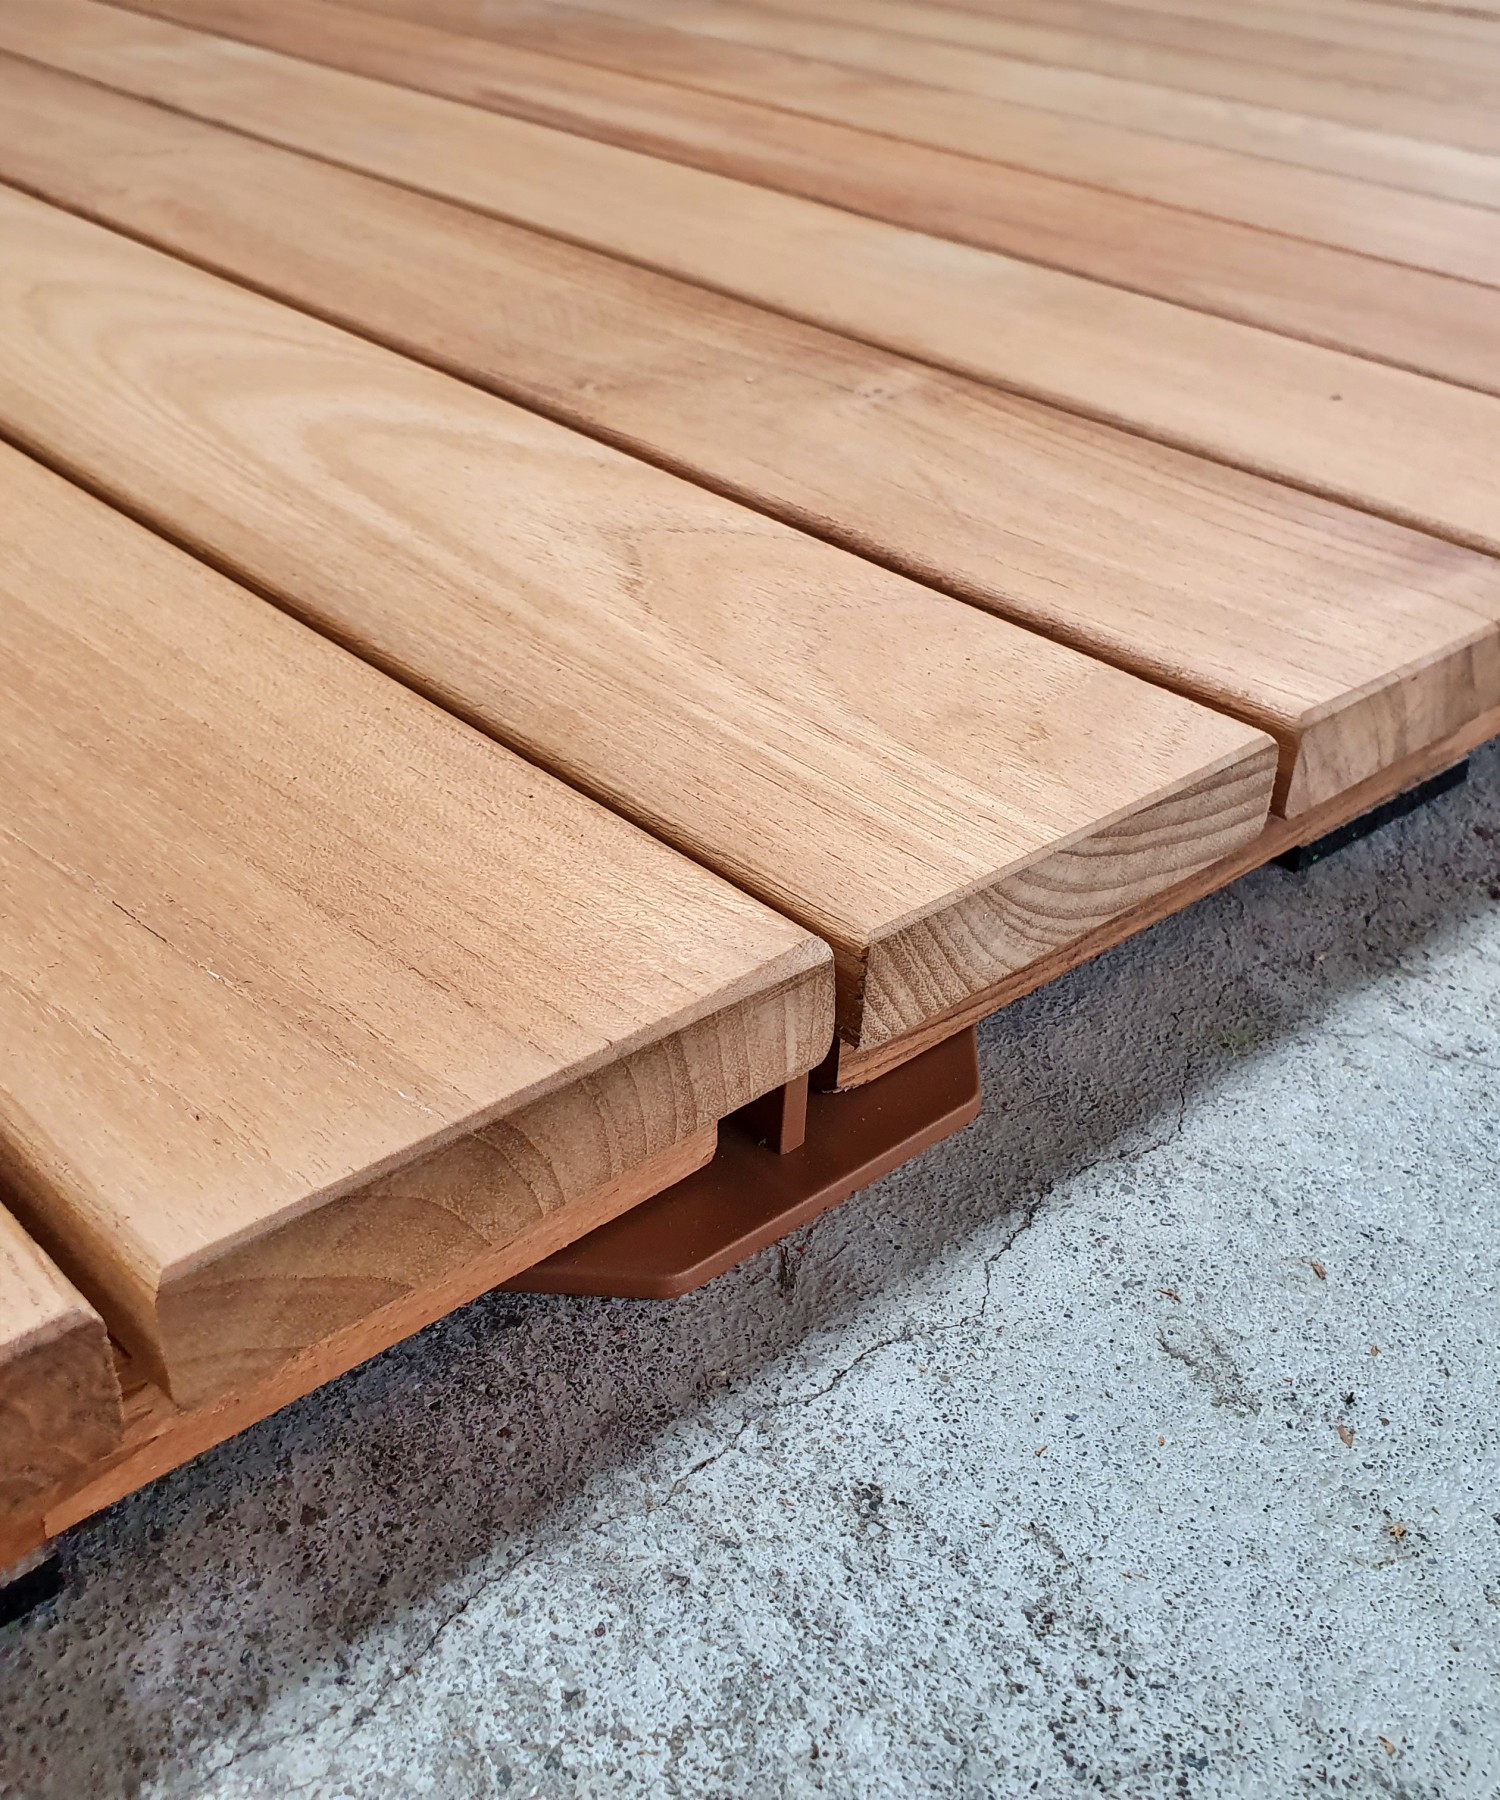 Ecco due tipi di pavimento sostenibile in legno per esterno